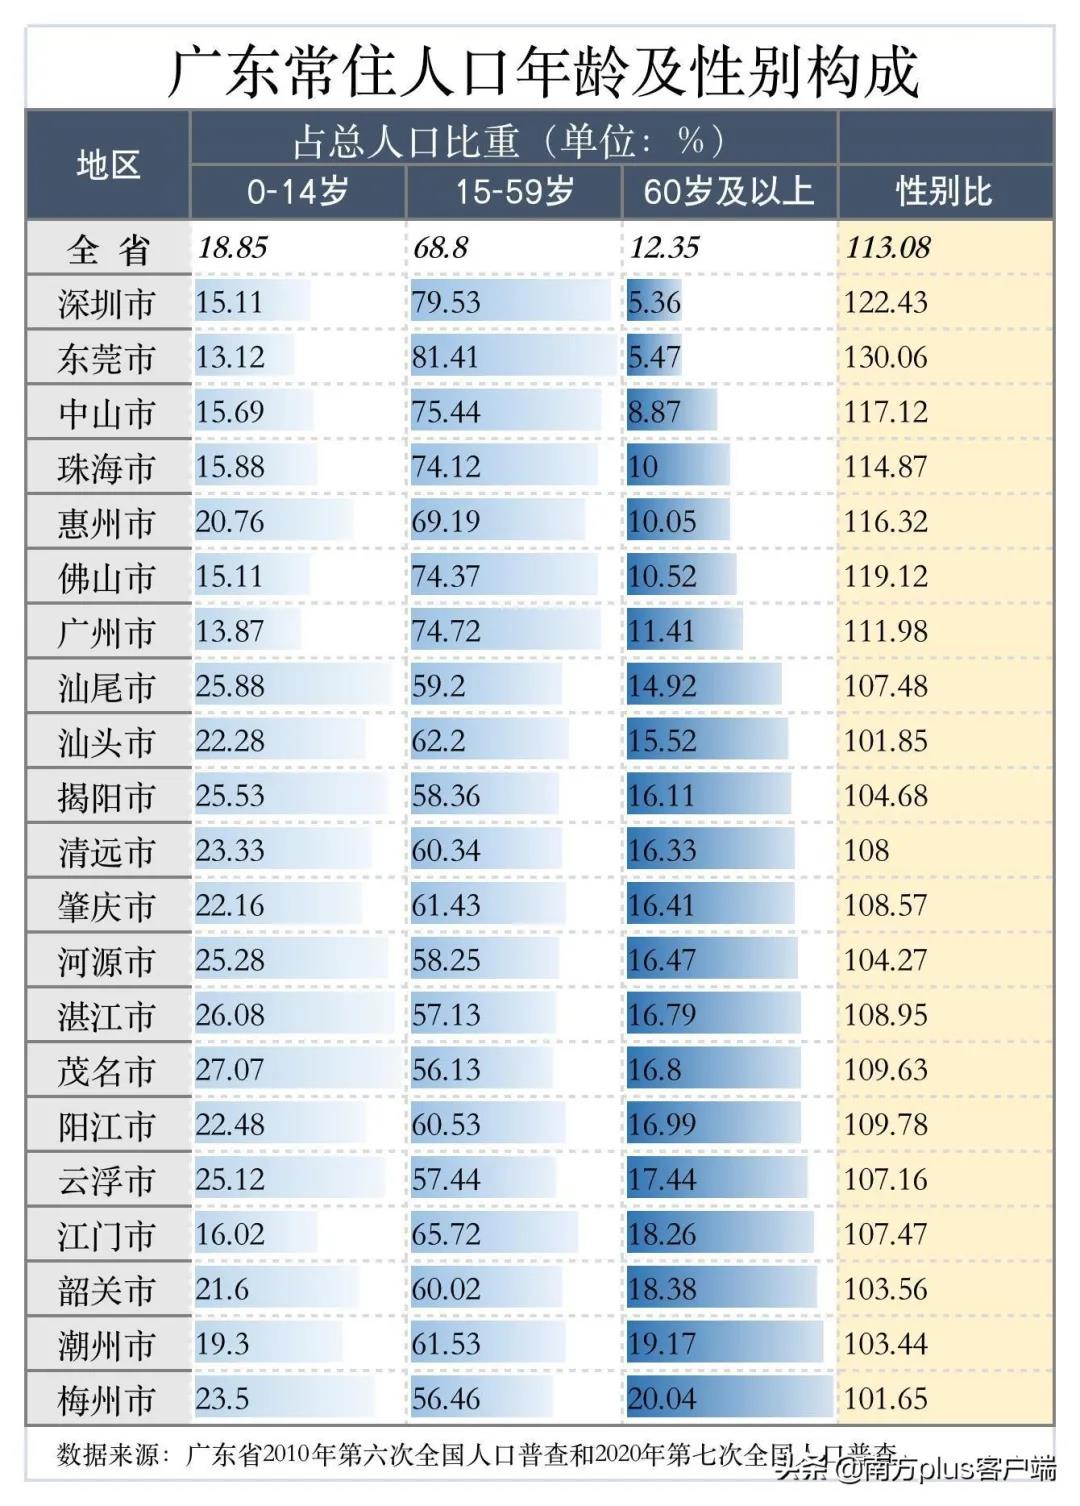 深圳人口密度分布图片